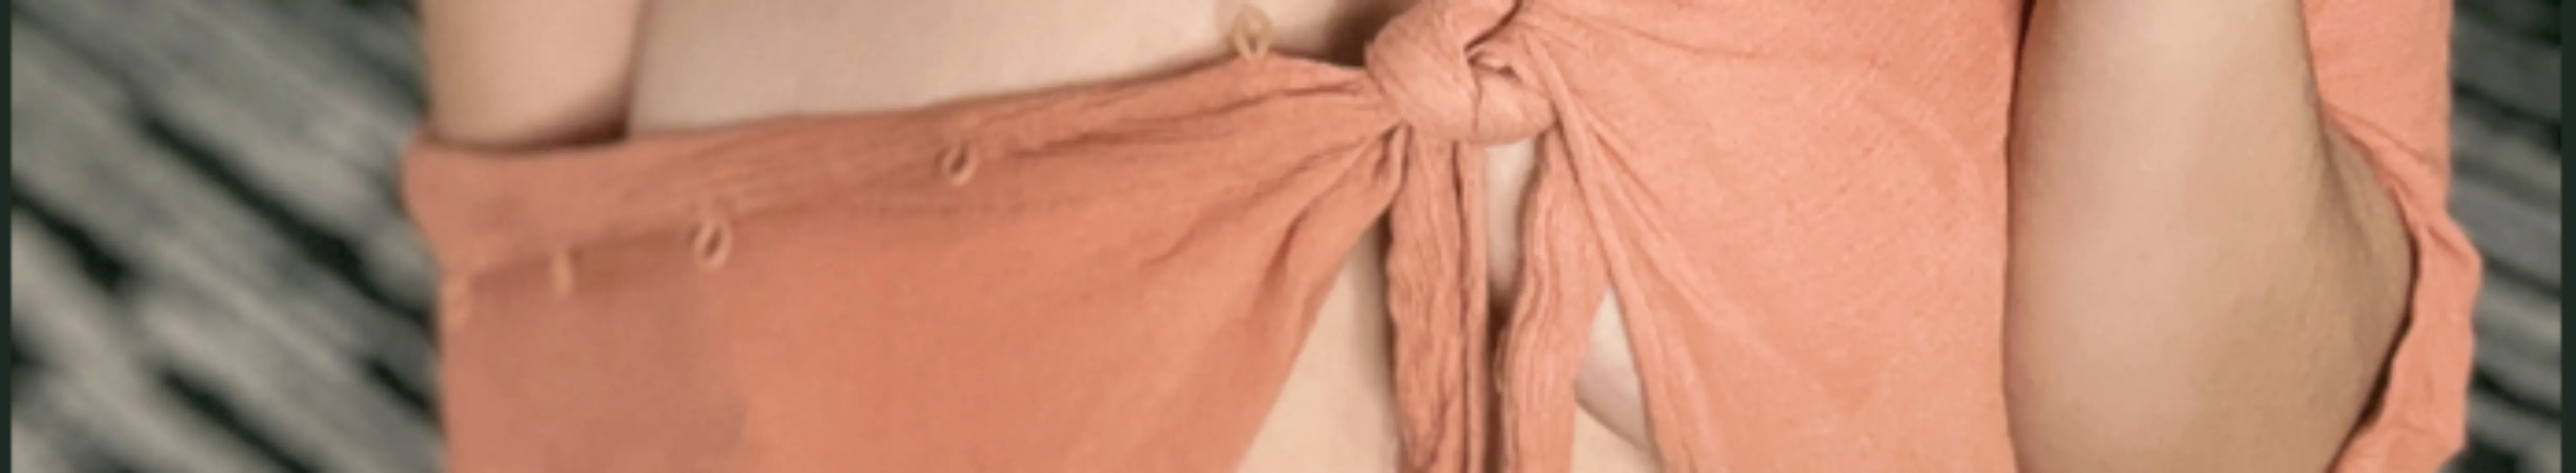 DOBREVA Women's Lace Bra Plus Size Minimizer Sexy Full Coverage Underwire  Unlined 